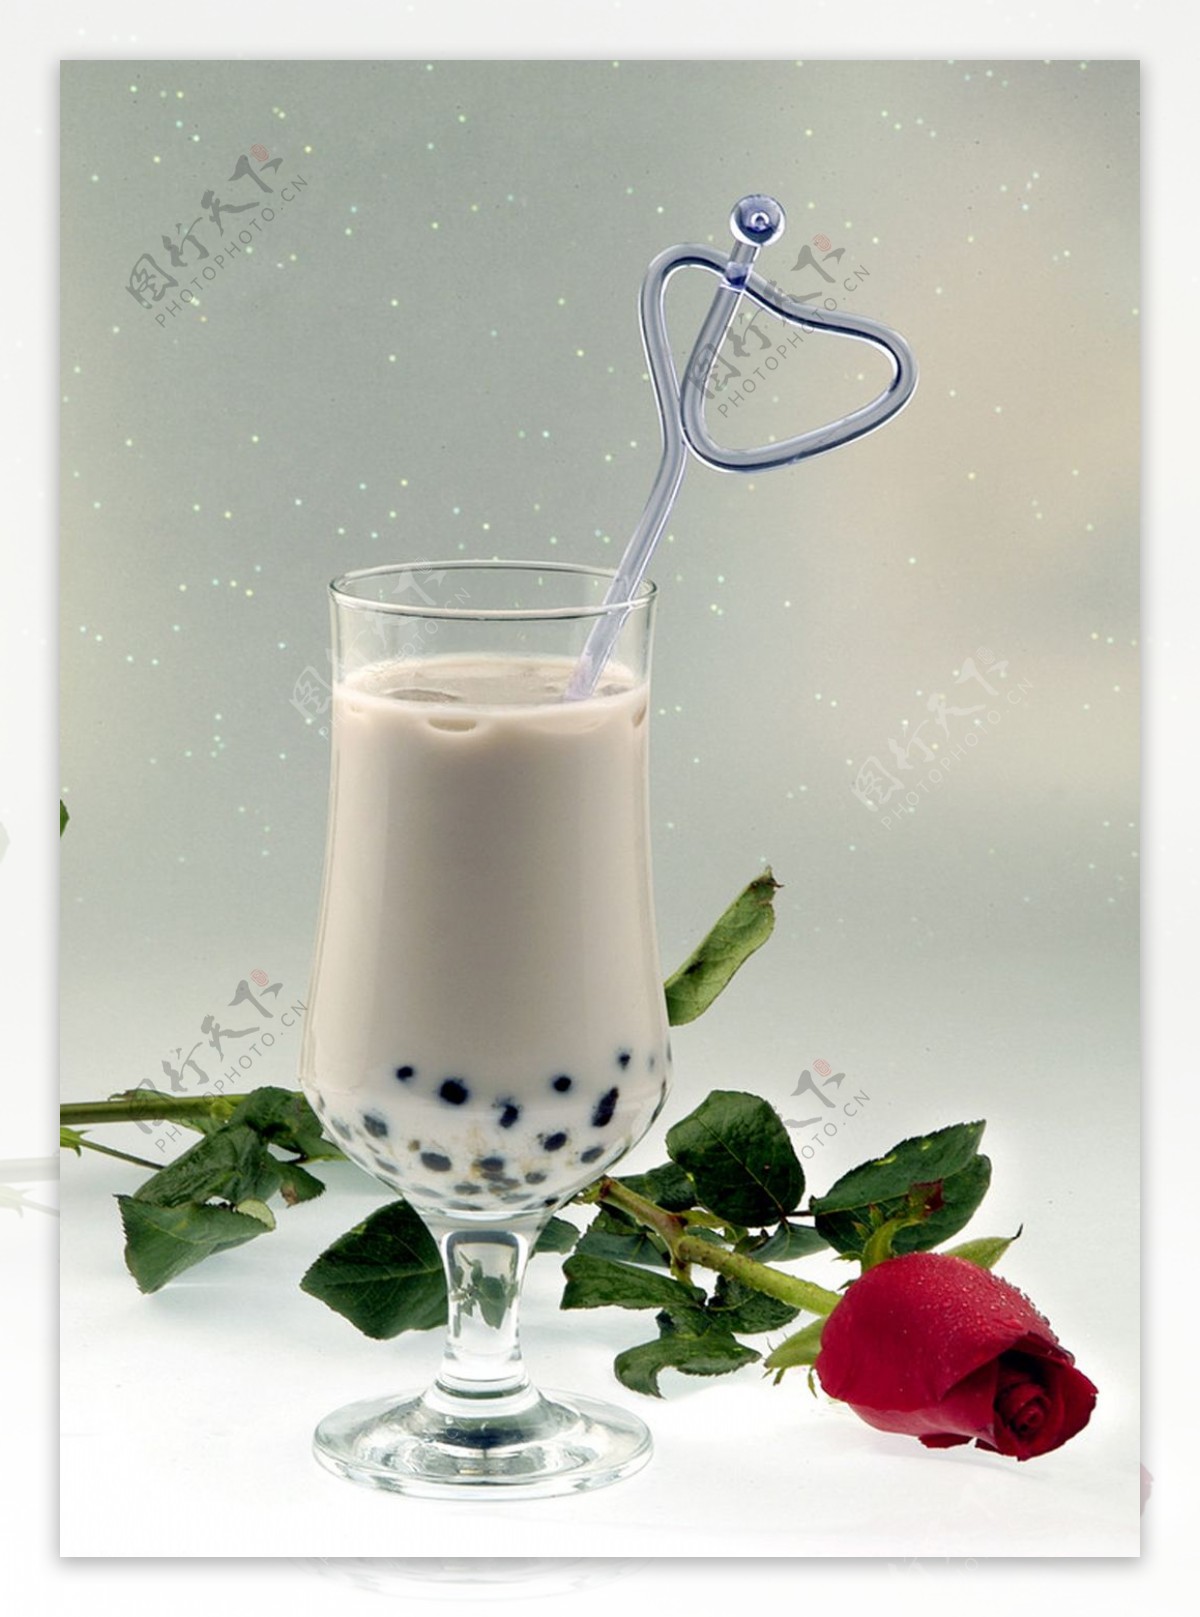 珍珠奶茶图片